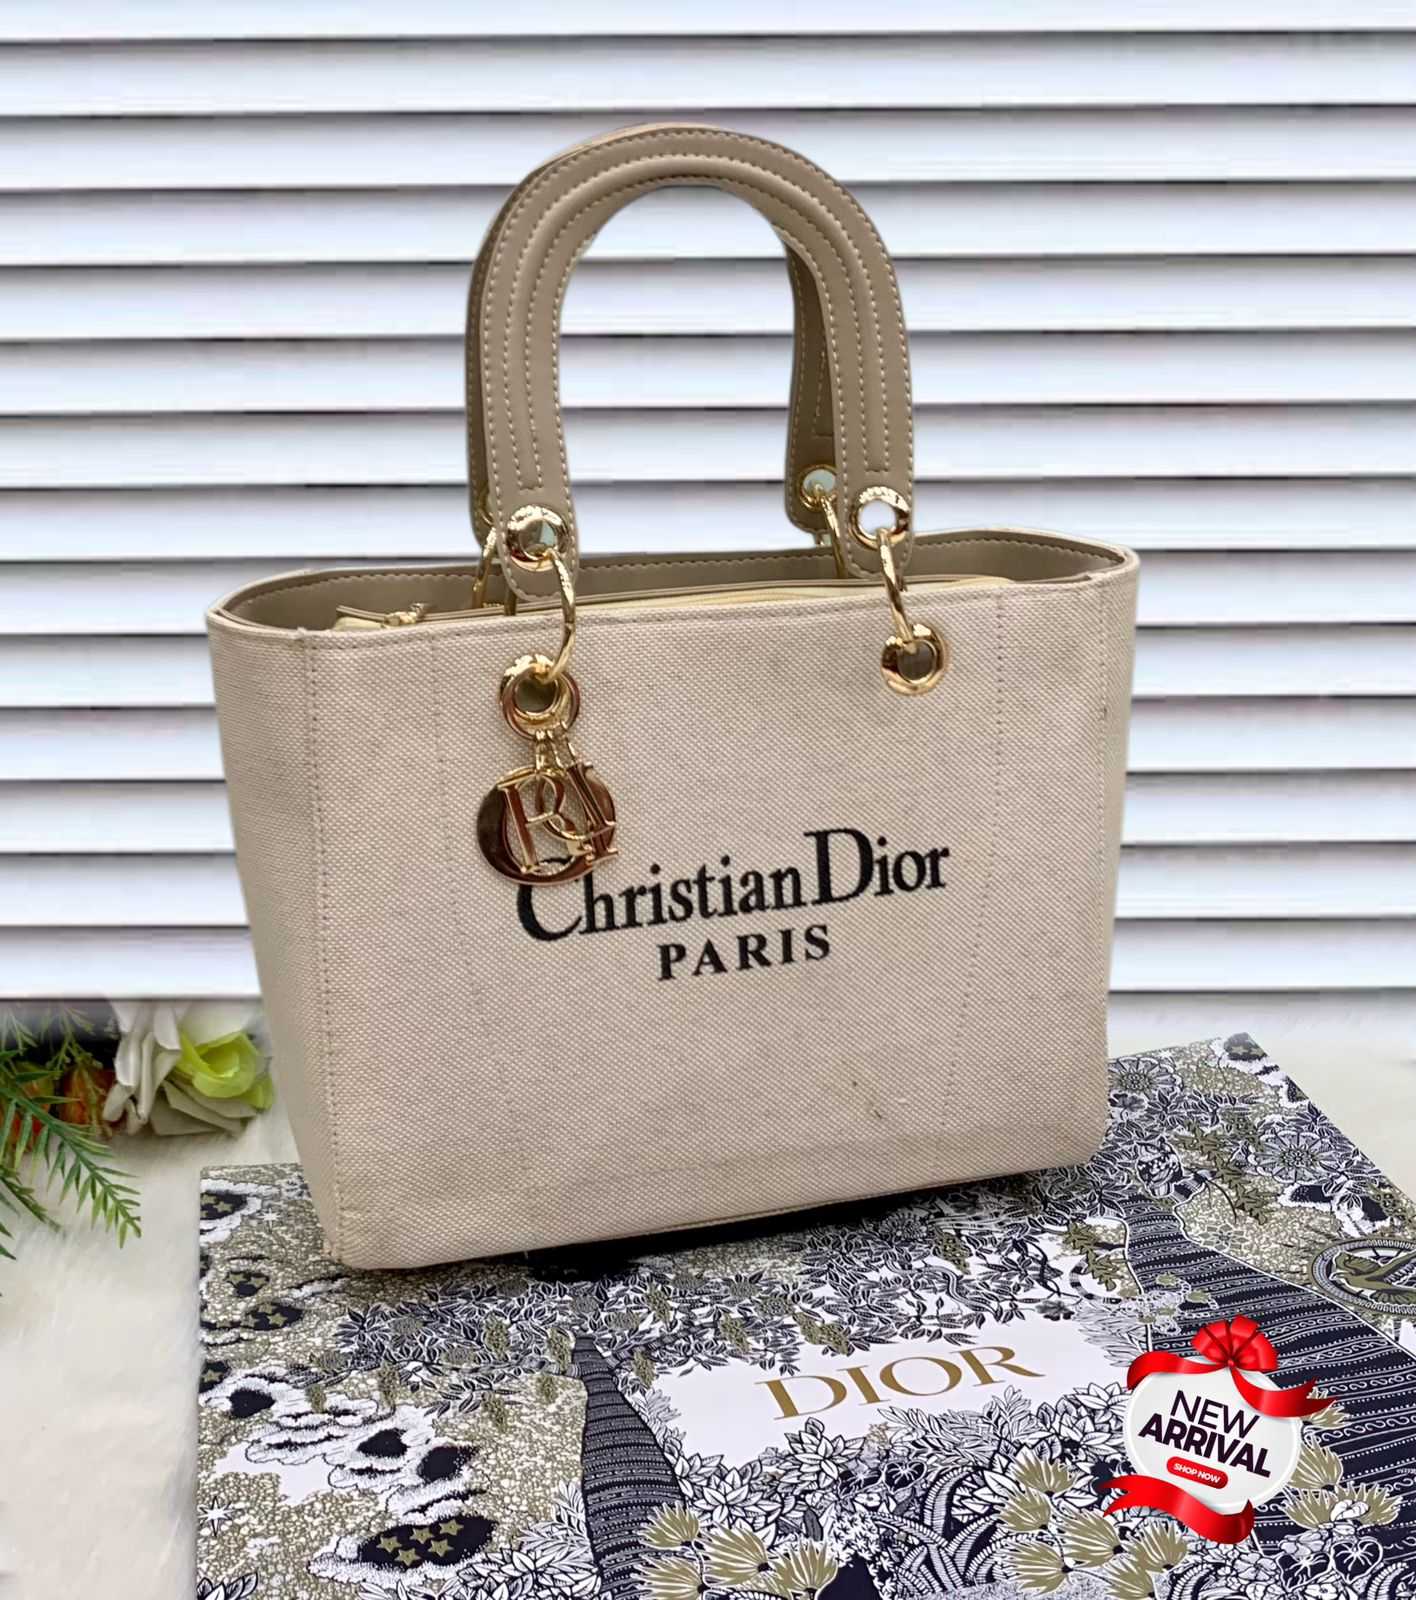 Christian Dior Paris hand bag